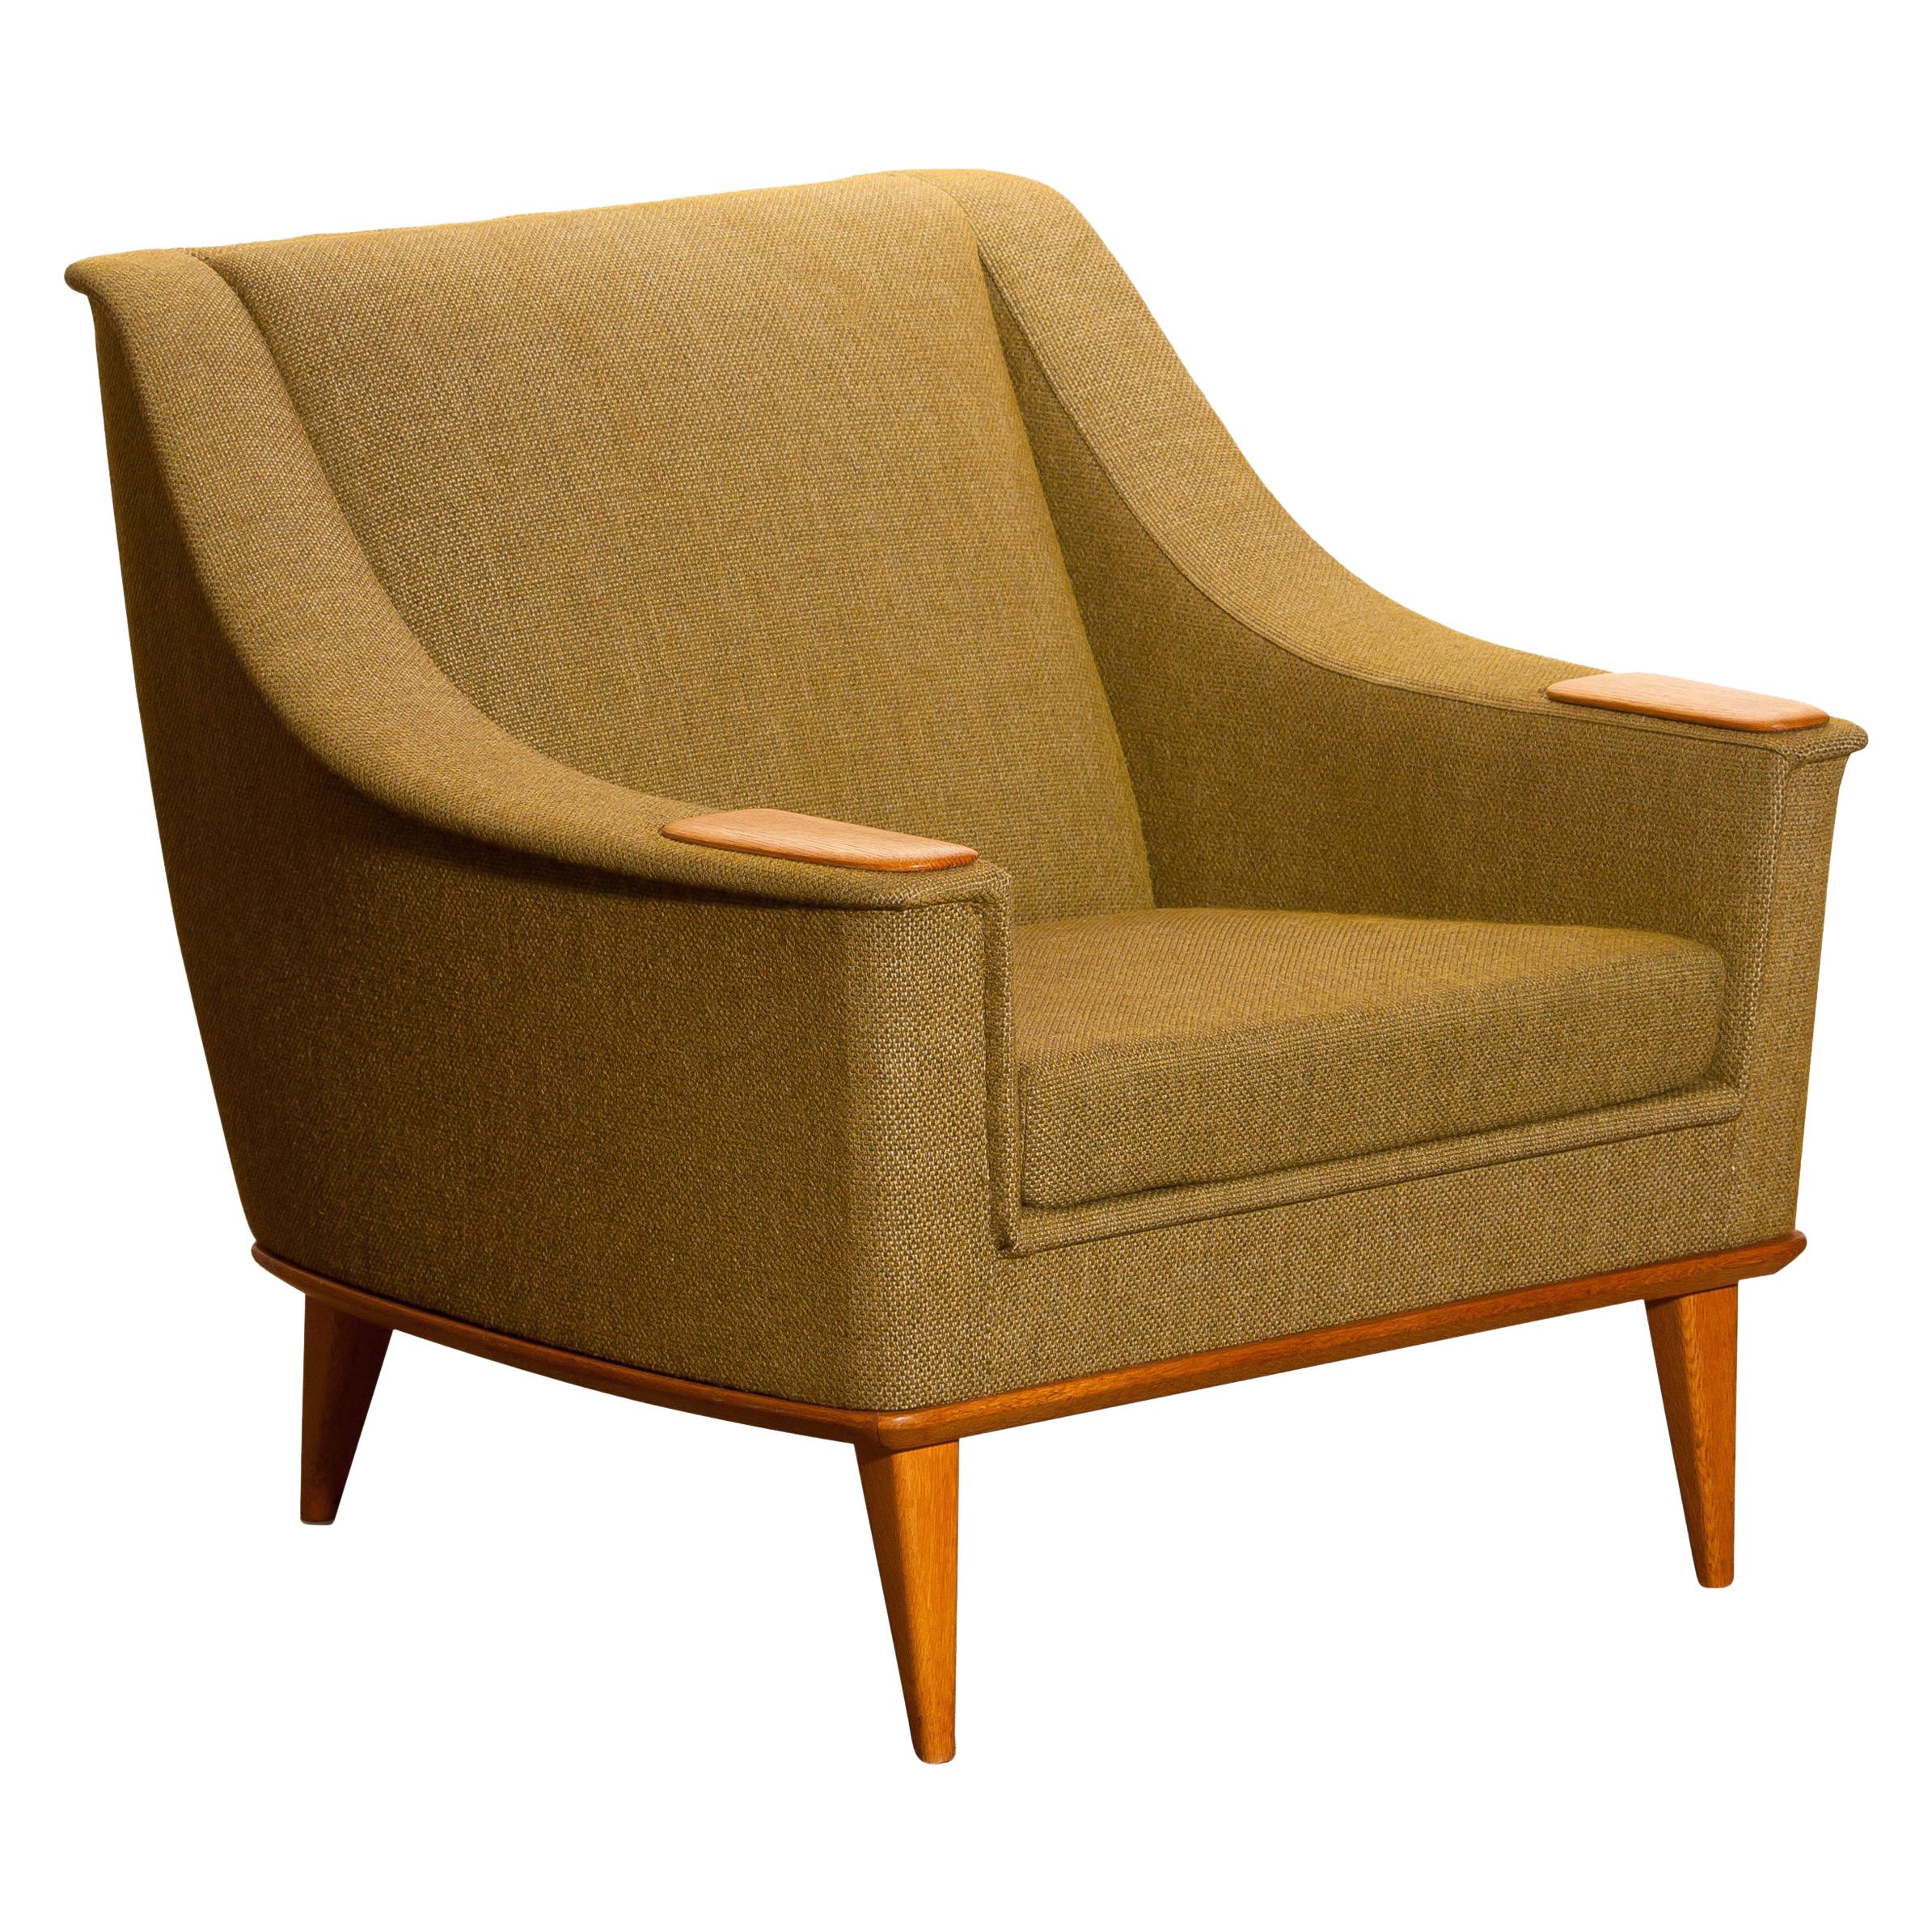 Mid-20th Century 1960s, Green Upholstered Oak Lounge / Easy Chair, Folke Ohlsson for DUX, Sweden